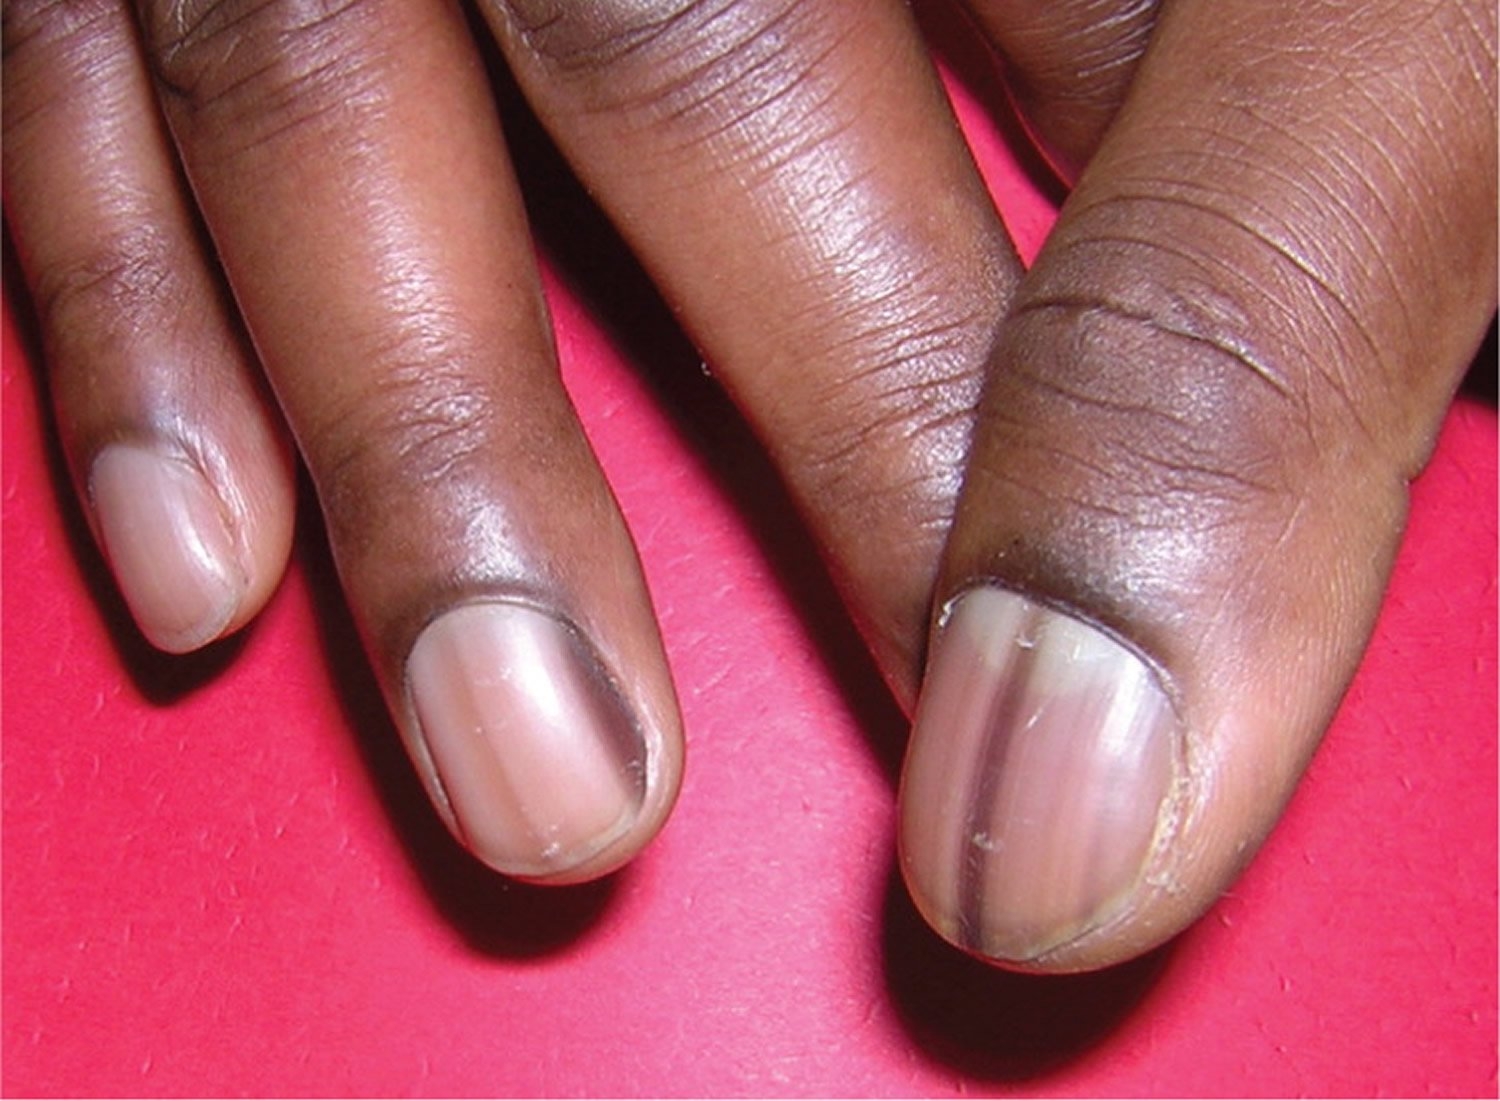 Полоски на ногтях причины вертикальные у женщин. Ониходистрофия, лейконихия. Подноктевавая меланома. Околоногтевая меланома.